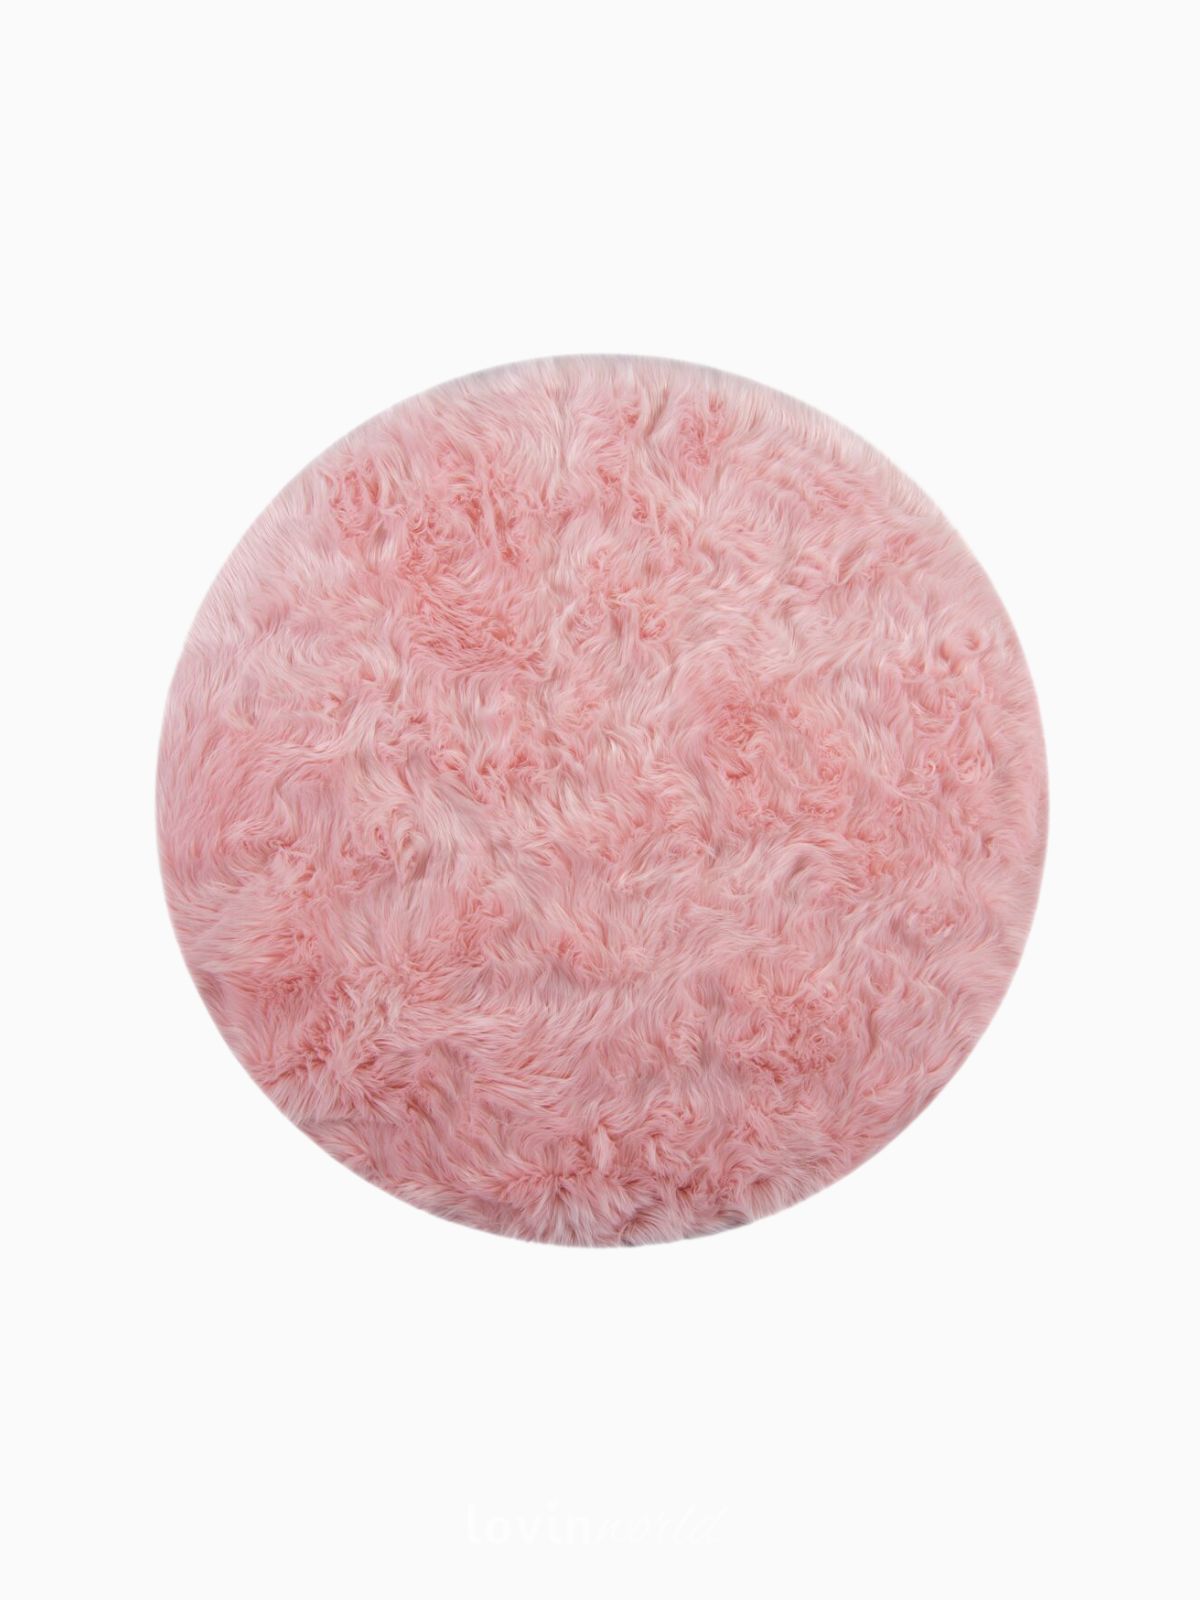 Tappeto rotondo shaggy Sheepskin in poliestere, colore rosa 120x120 cm.-1